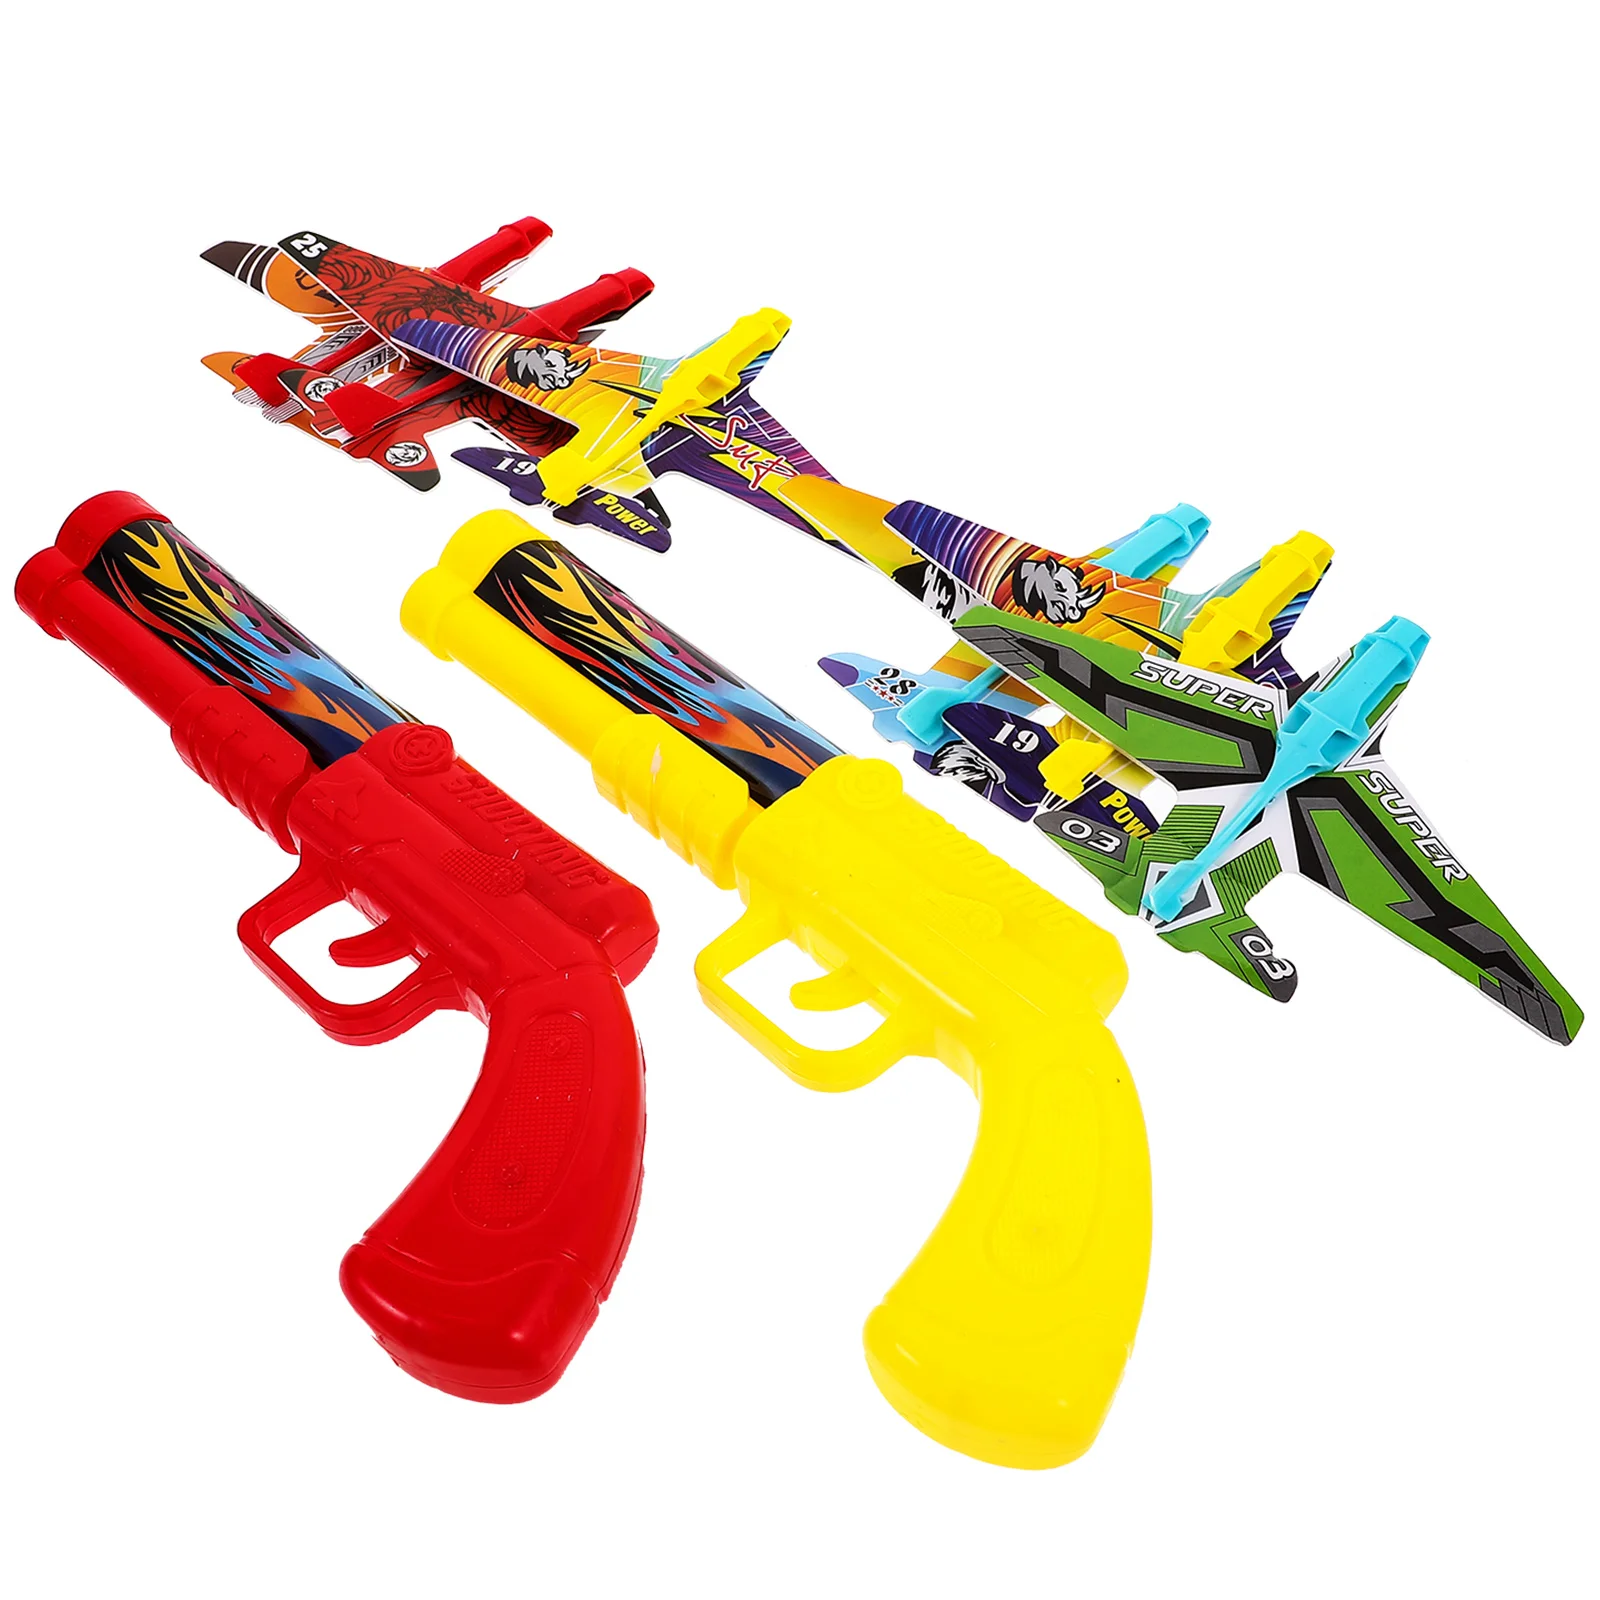 

Катапульта пузырьковый самолет игрушка для девочек 8-12 самолеты пенопластовый пусковой механизм подарки для мальчиков